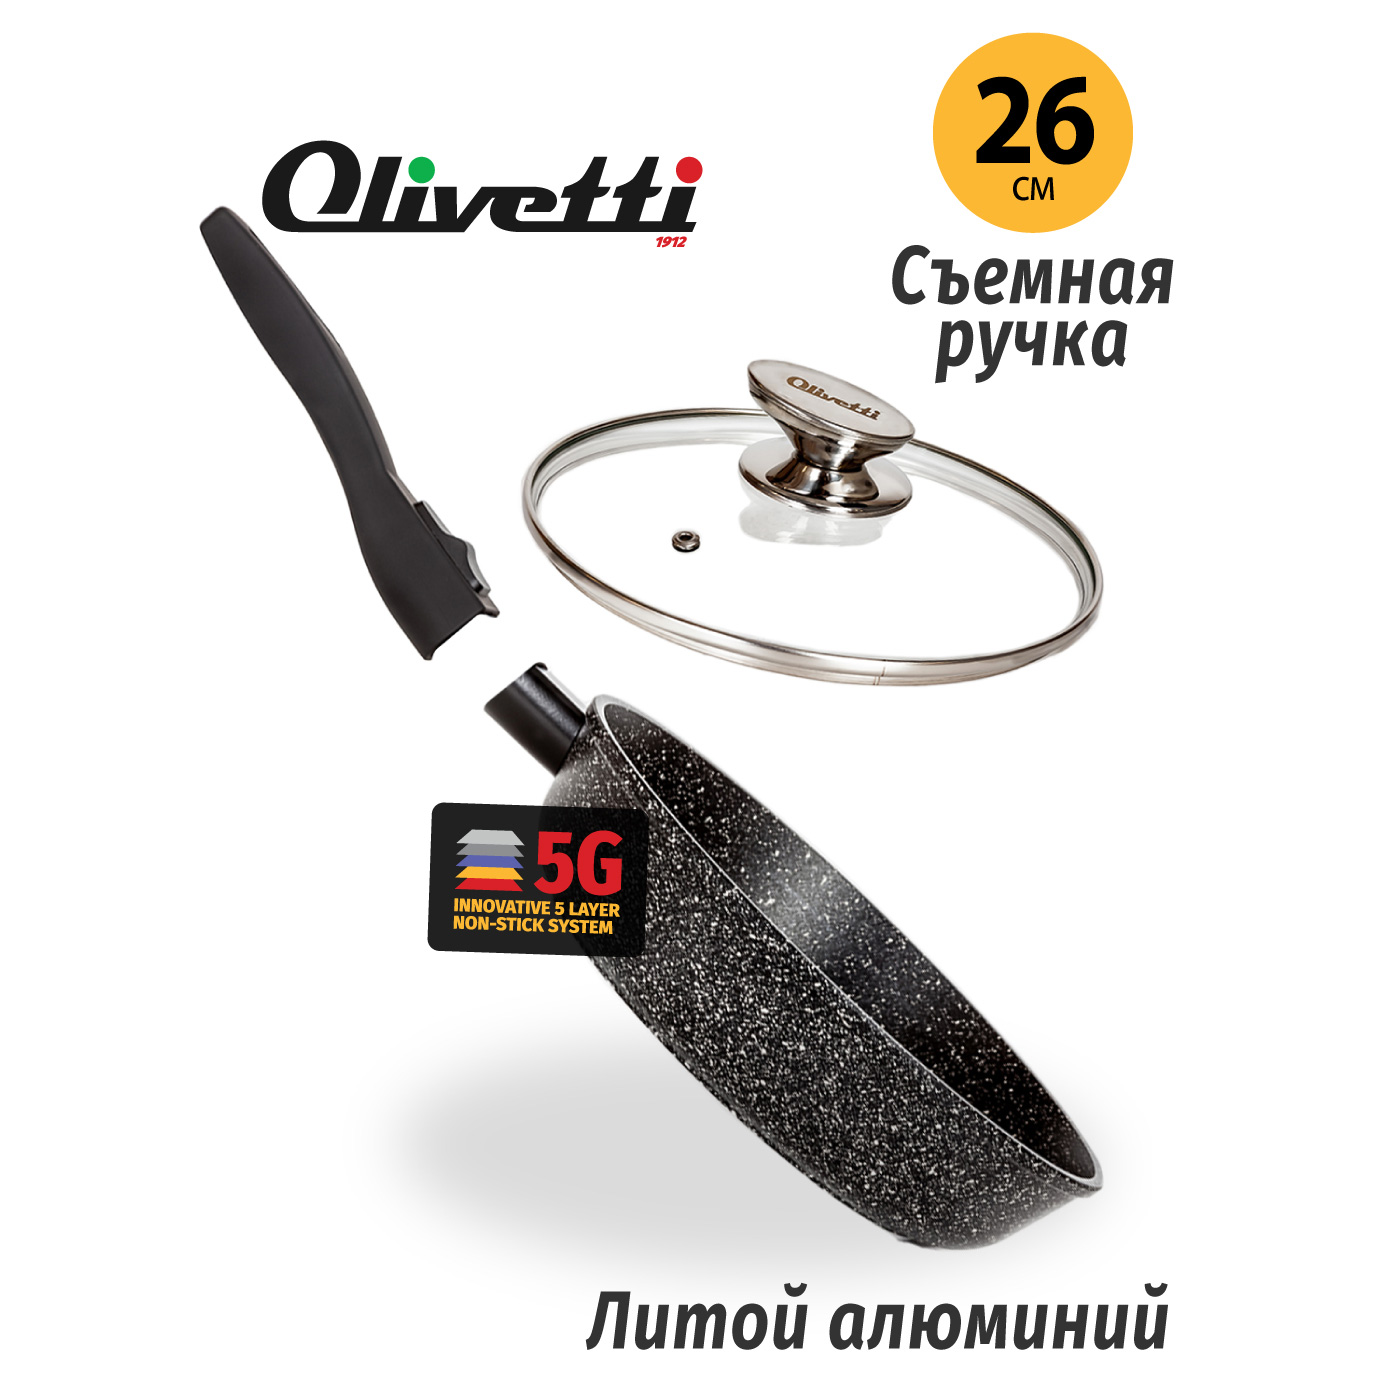 Картинка Сковорода со съемной ручкой Olivetti FP726LD (26 см) по разумной цене купить в интернет магазине mall.su